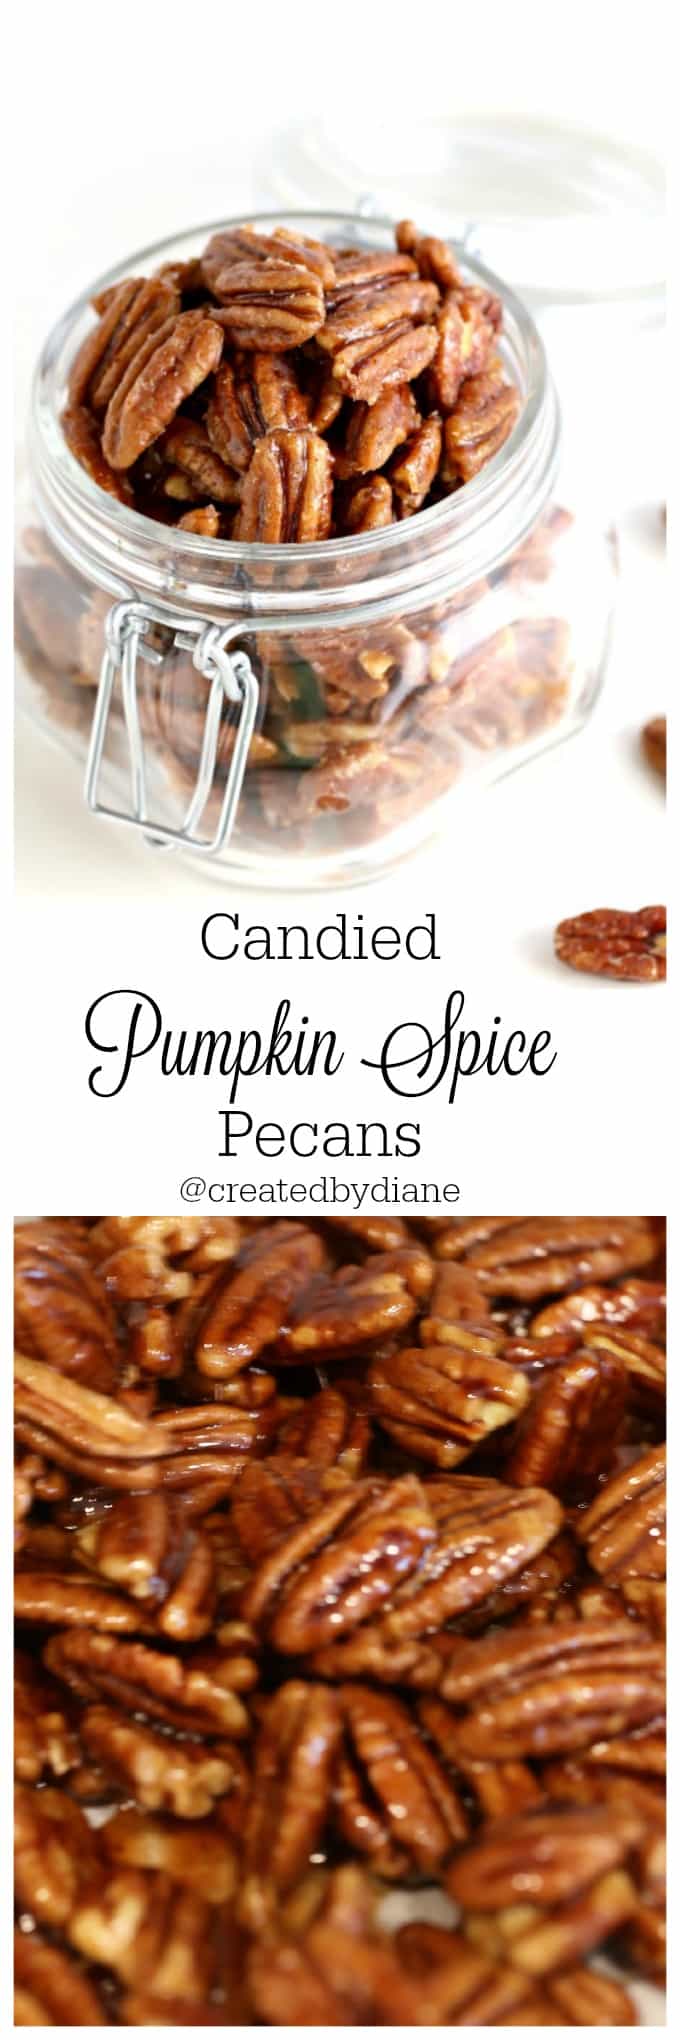 Candied Pumpkin Spice Pecans @createdydiane